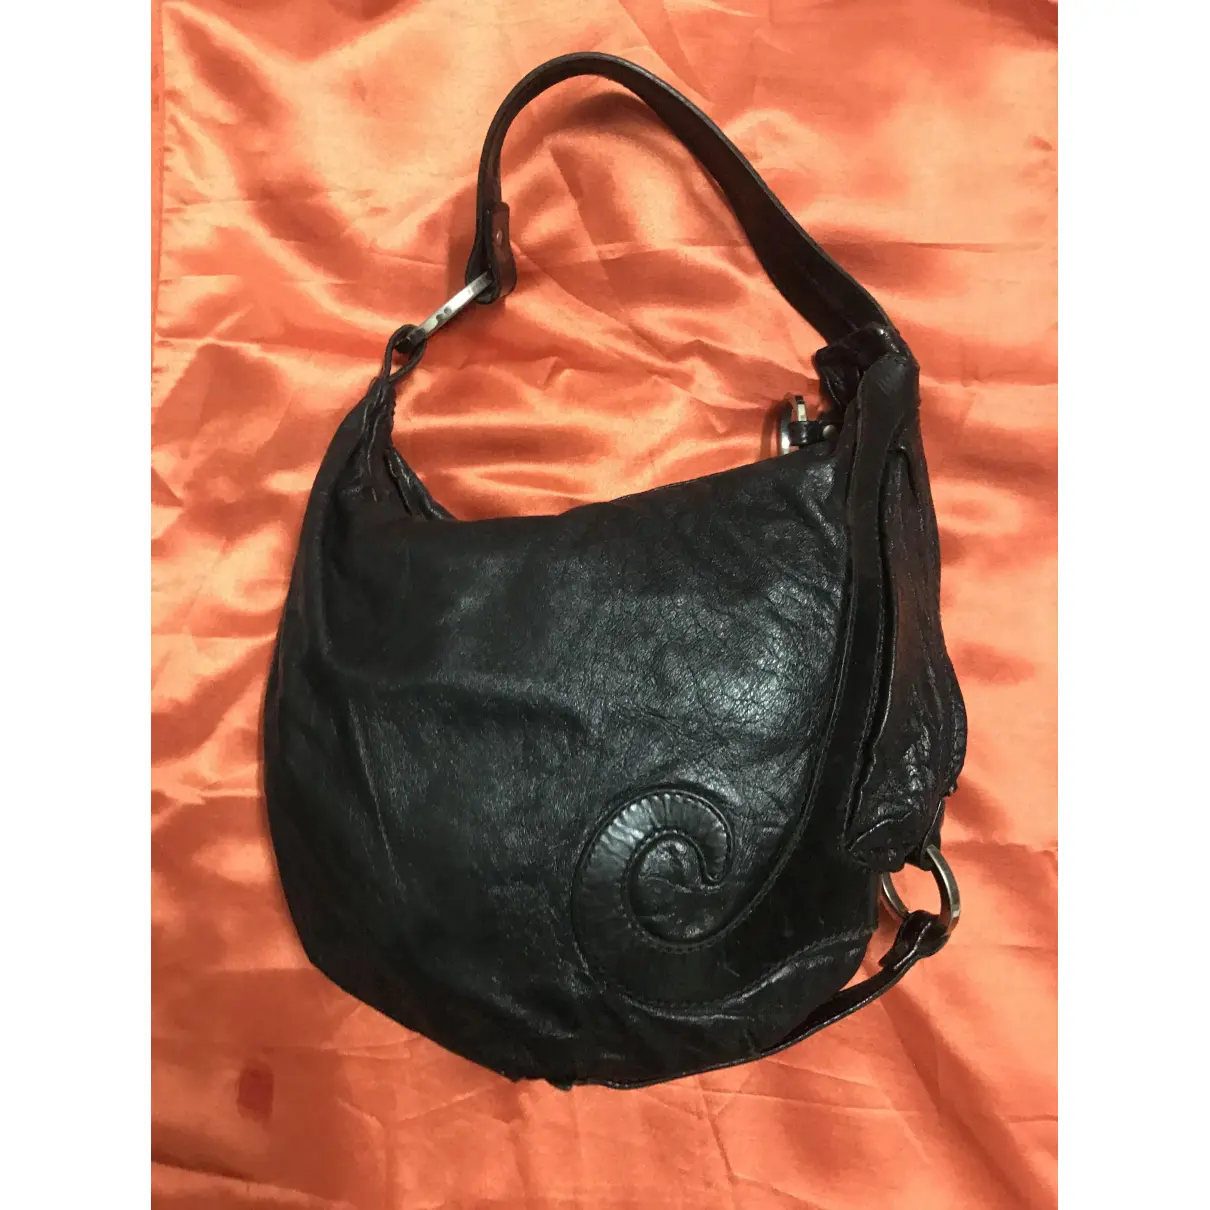 Buy Fendi Oyster leather handbag online - Vintage